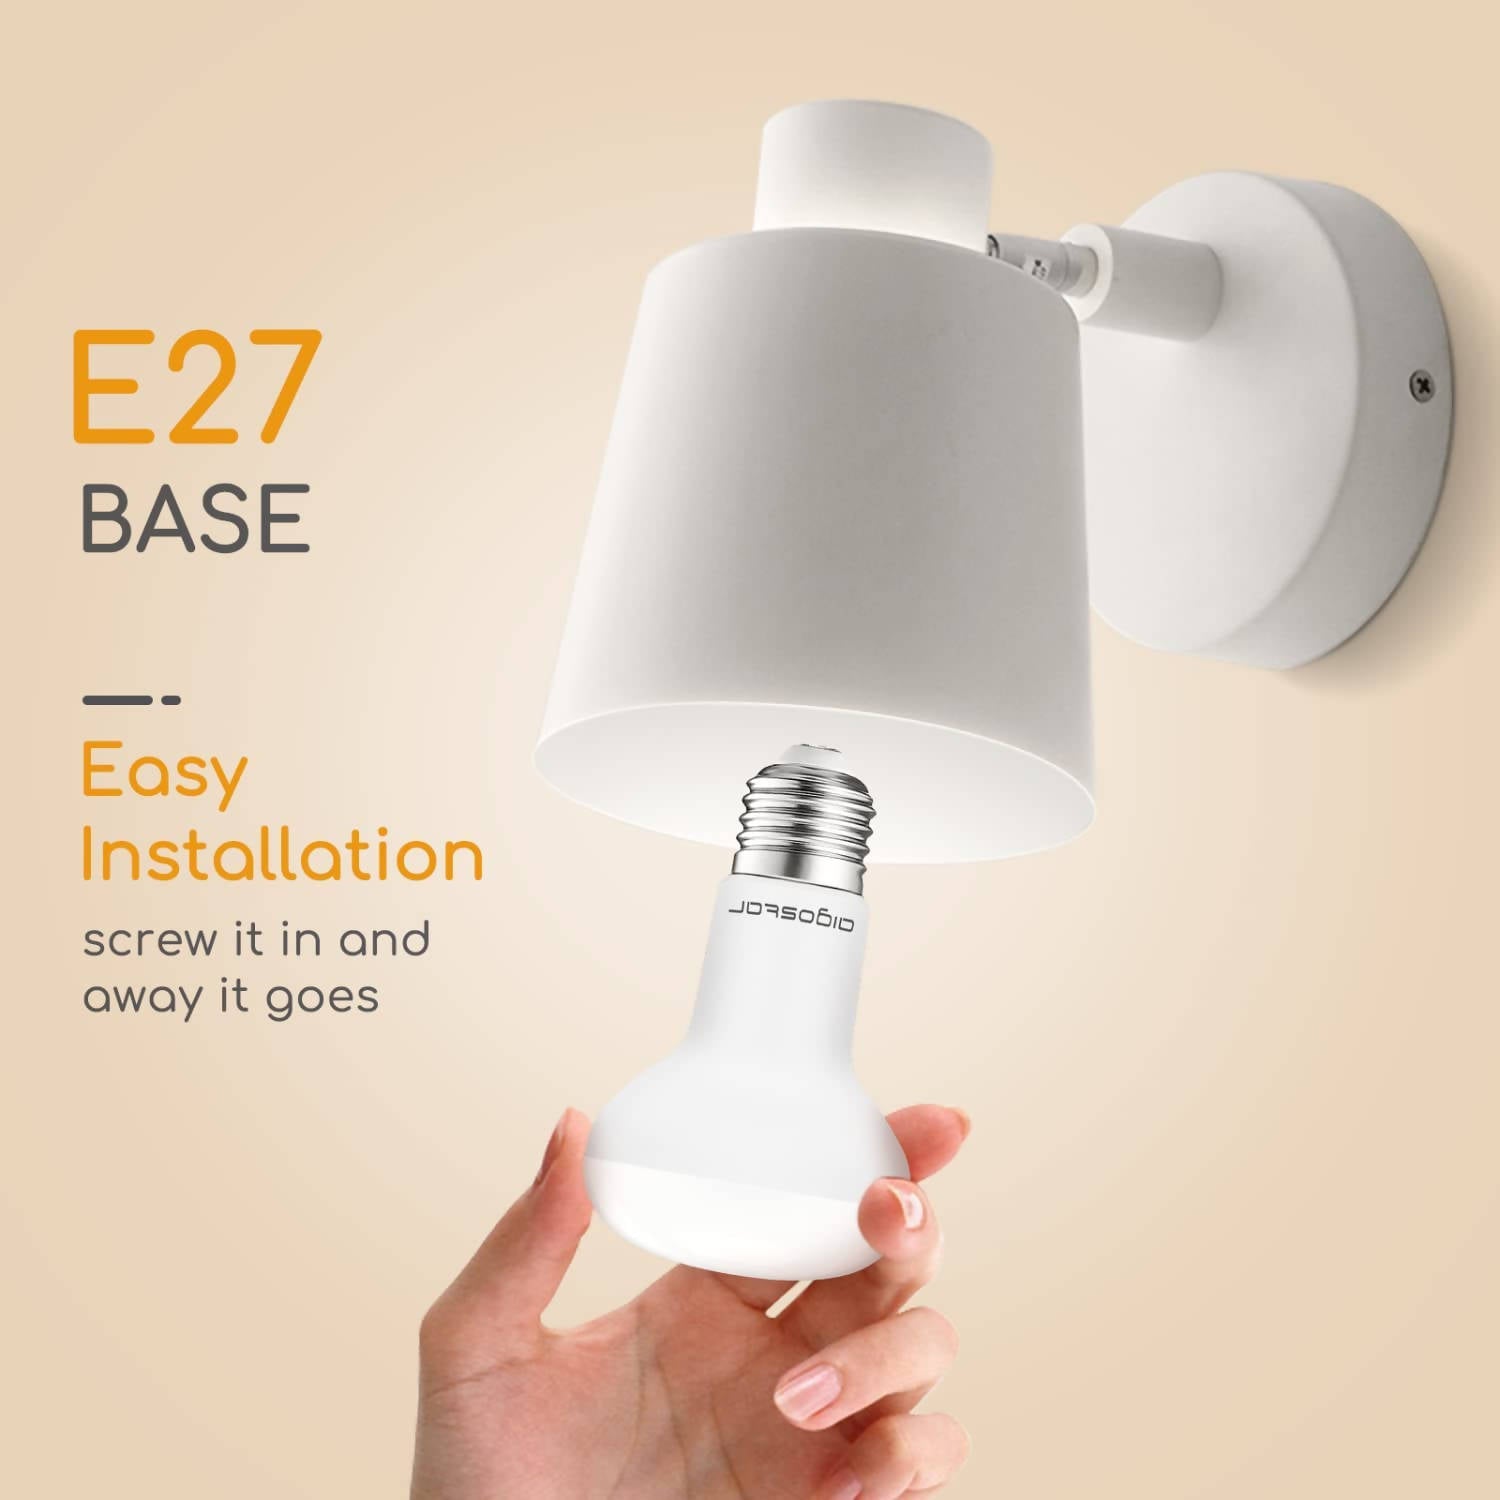 E27 LED Reflector Warm White 9 W Lamp 760 Lumen Light Bulb 3000 Kelvin, R63 170° Beam Angle Energy Saving Bulb Pack of 5